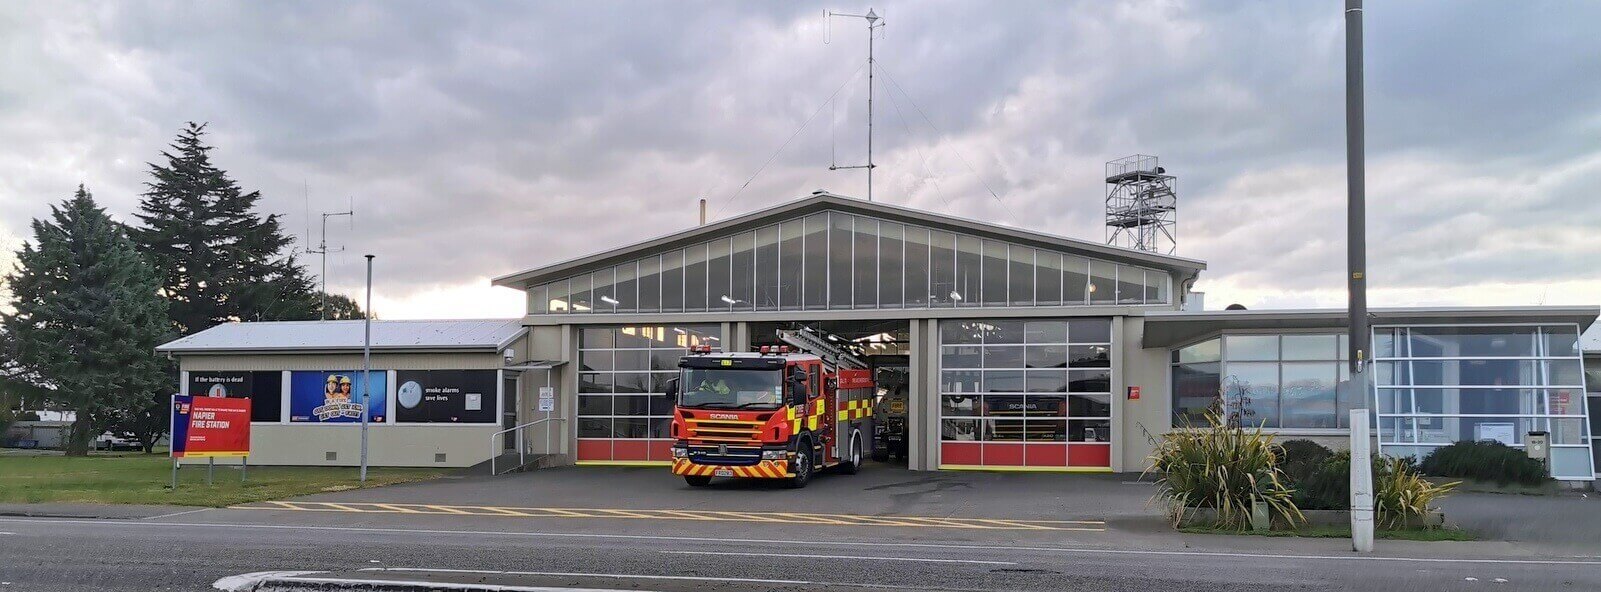 NZPFU seeking expert advice on Napier Fire Station seismic risks